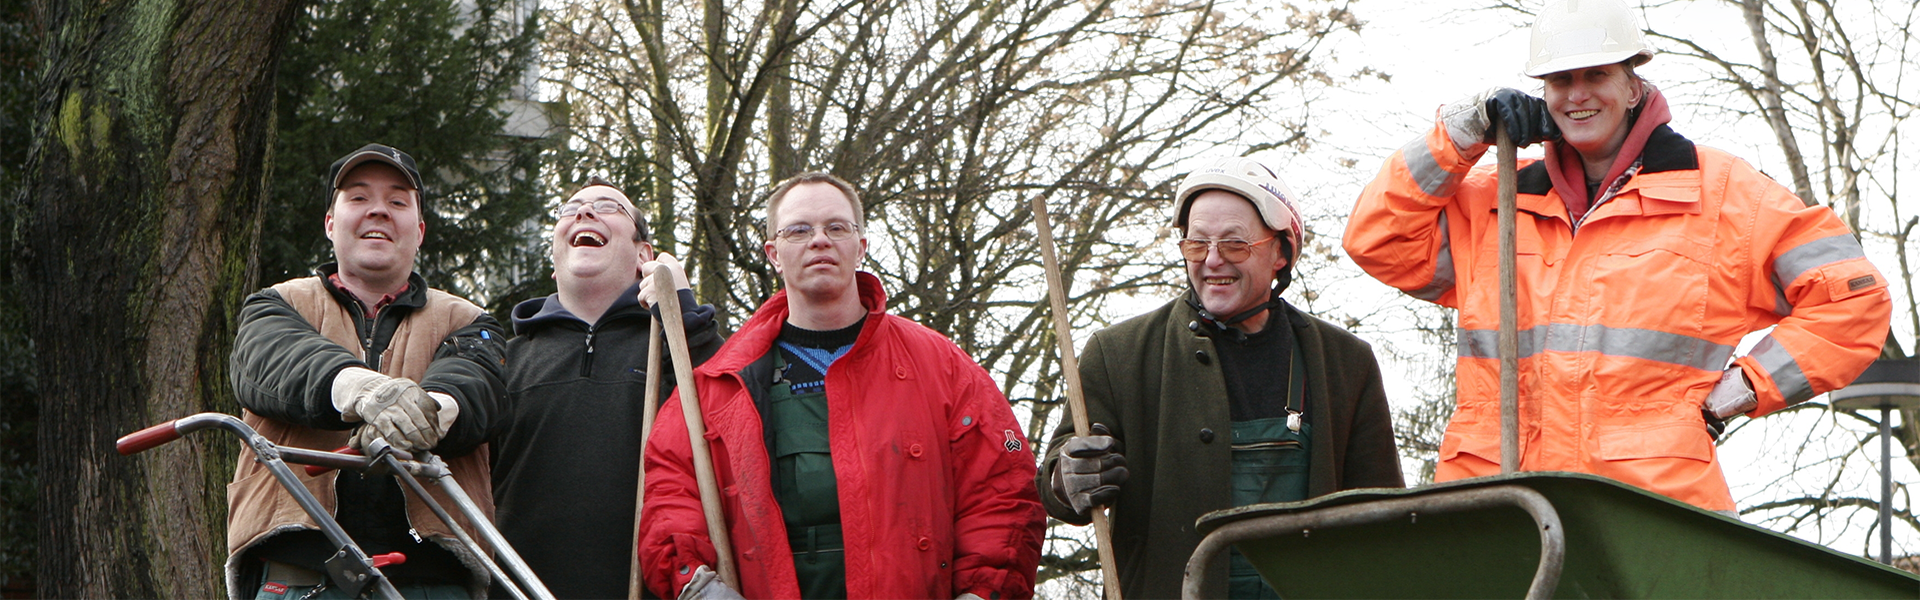 Fünf Personen der Gartengruppe der Elbe-Werkstätten mit verschiedenen Geräten bei der Arbeit im Gartenbau.